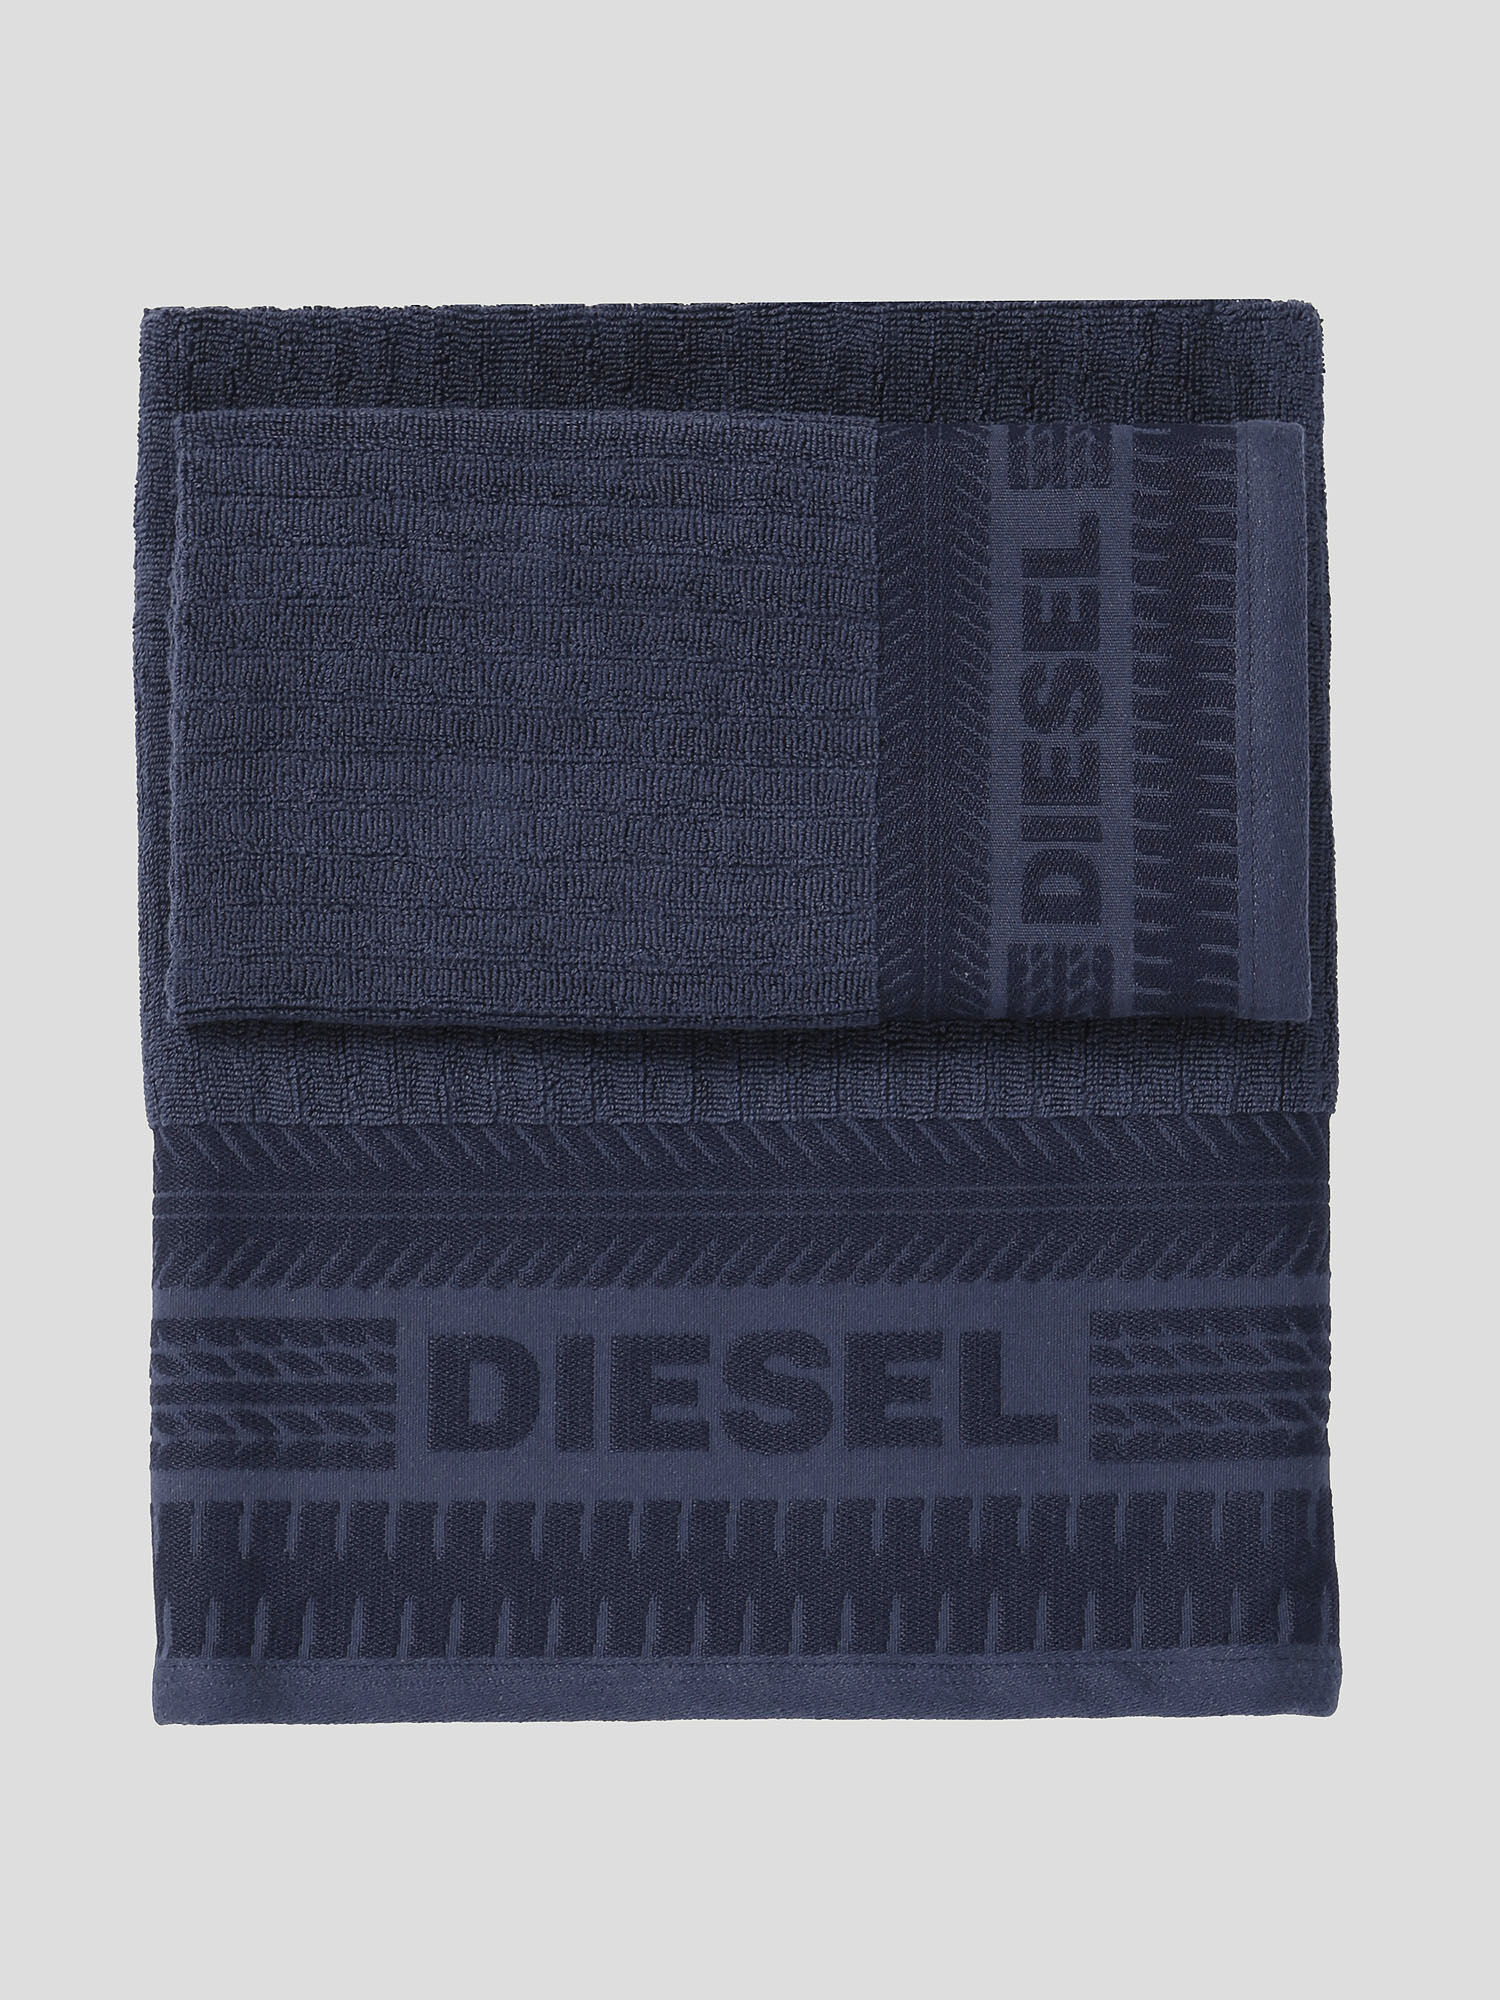 Diesel - 72327 SOLID, Blu - Image 1